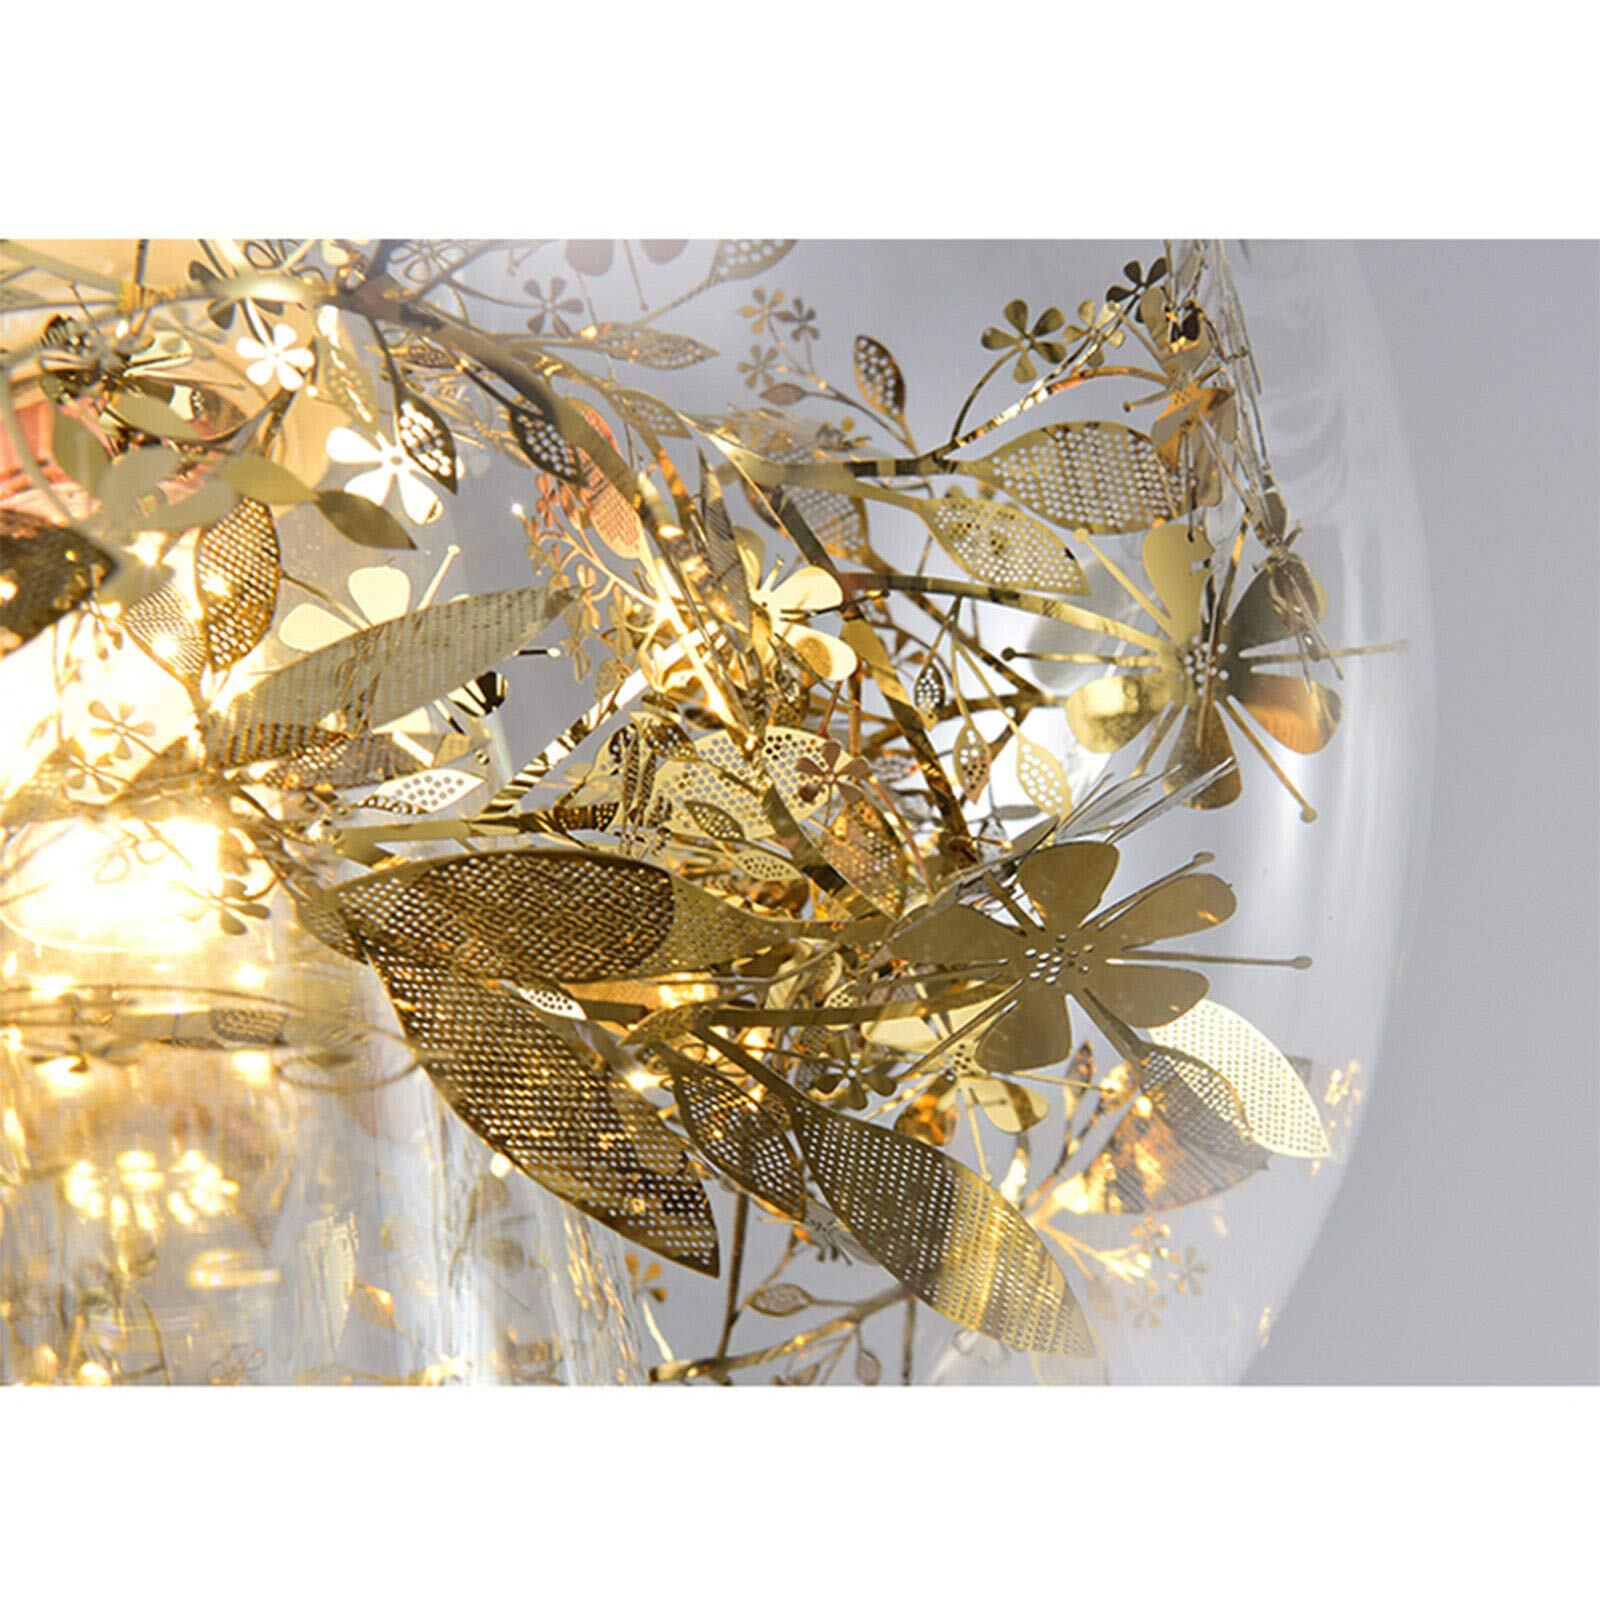 E27 20 cm LED Sfera di vetro Lampadario di design in cristallo creativo Plafoniere Lampada a sospensione moderna Lampada da soffitto